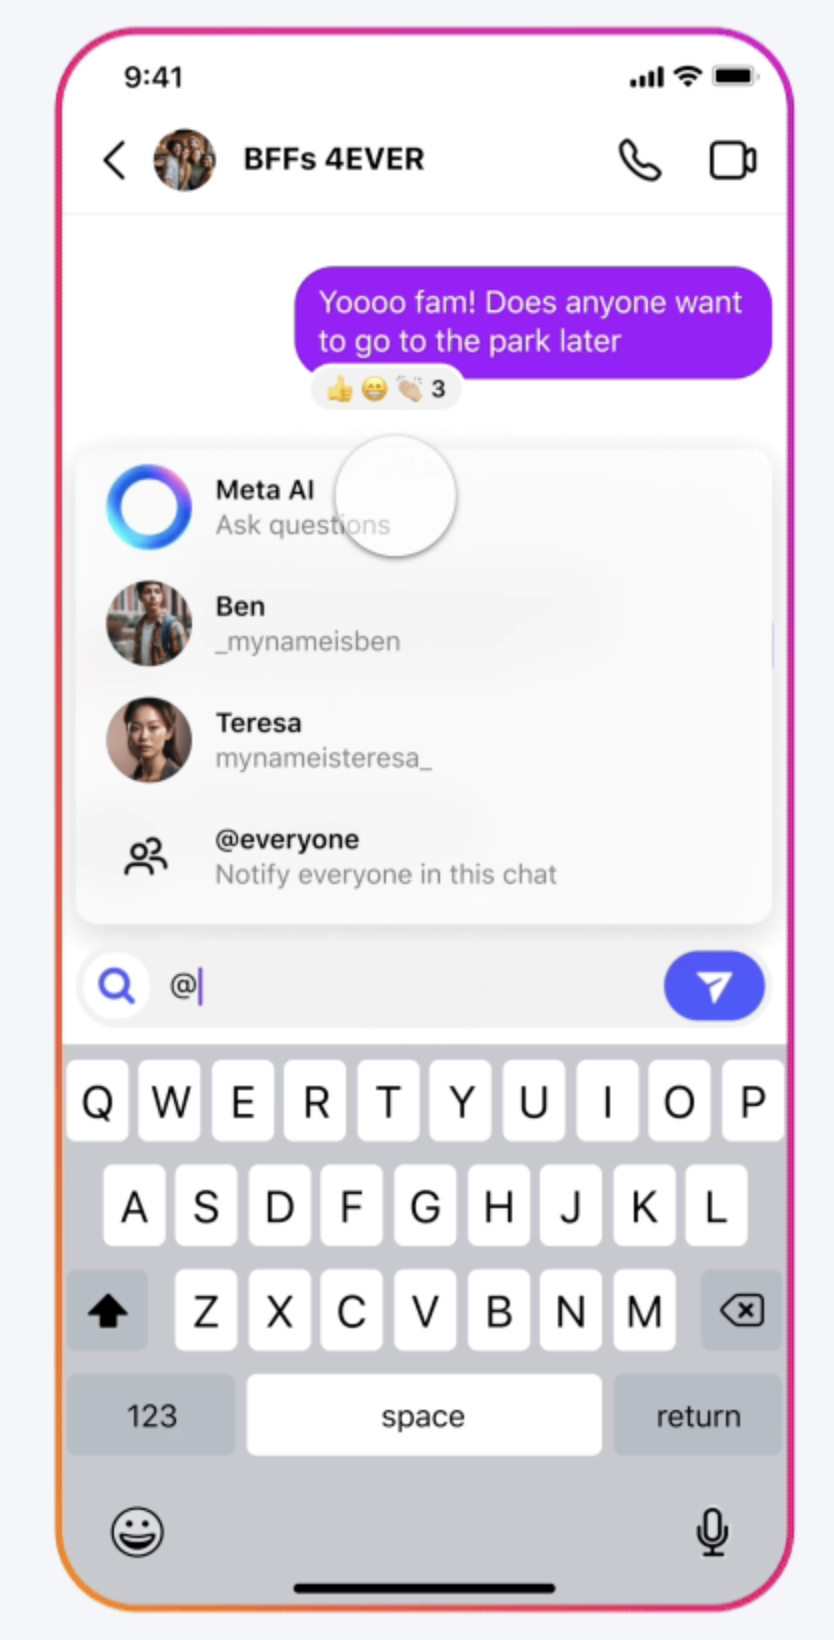 A screenshot of a smartphone messaging app called 